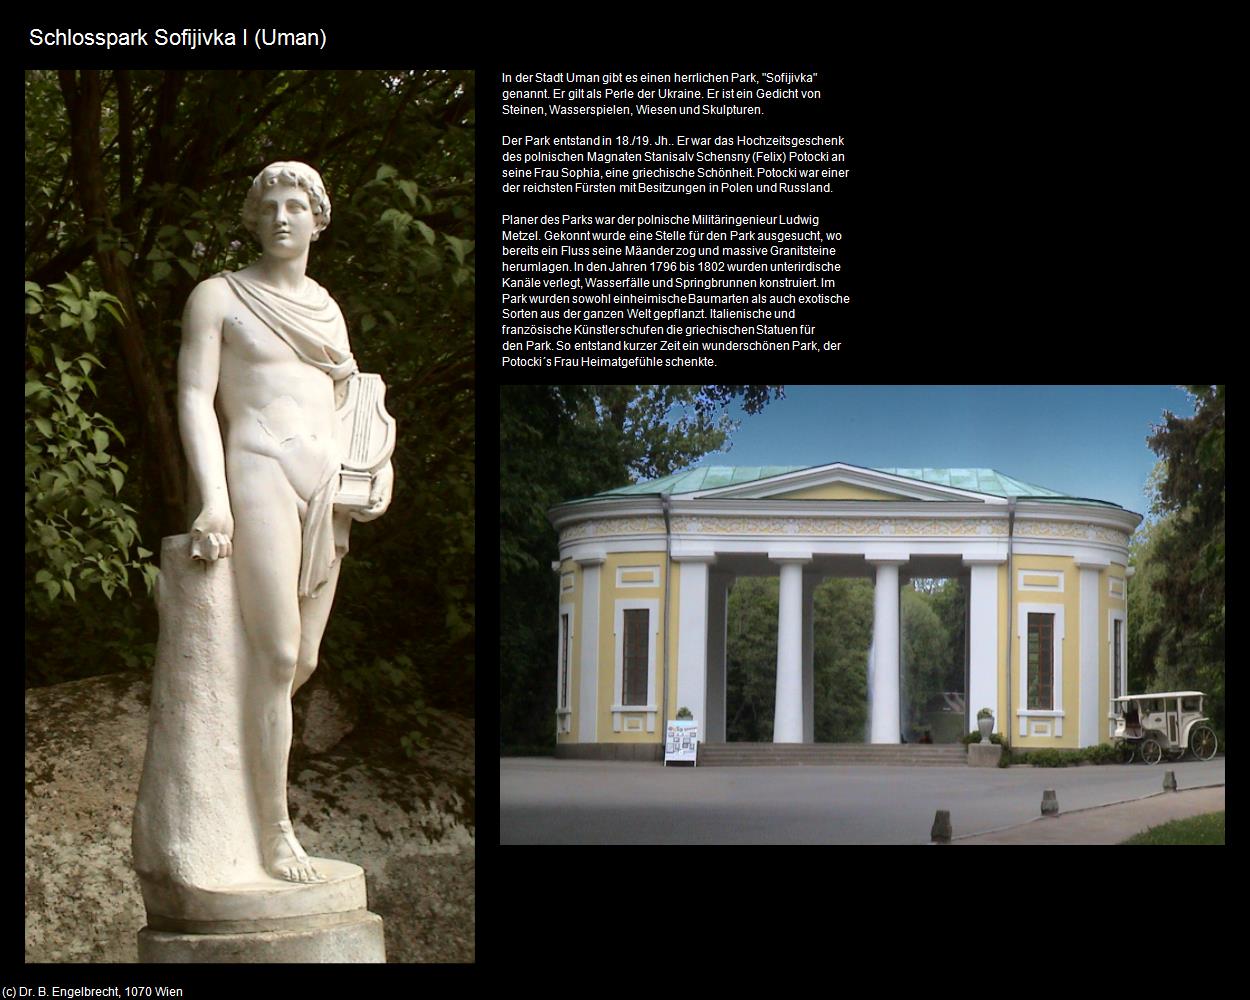 Schlosspark I (Uman) in UKRAINE